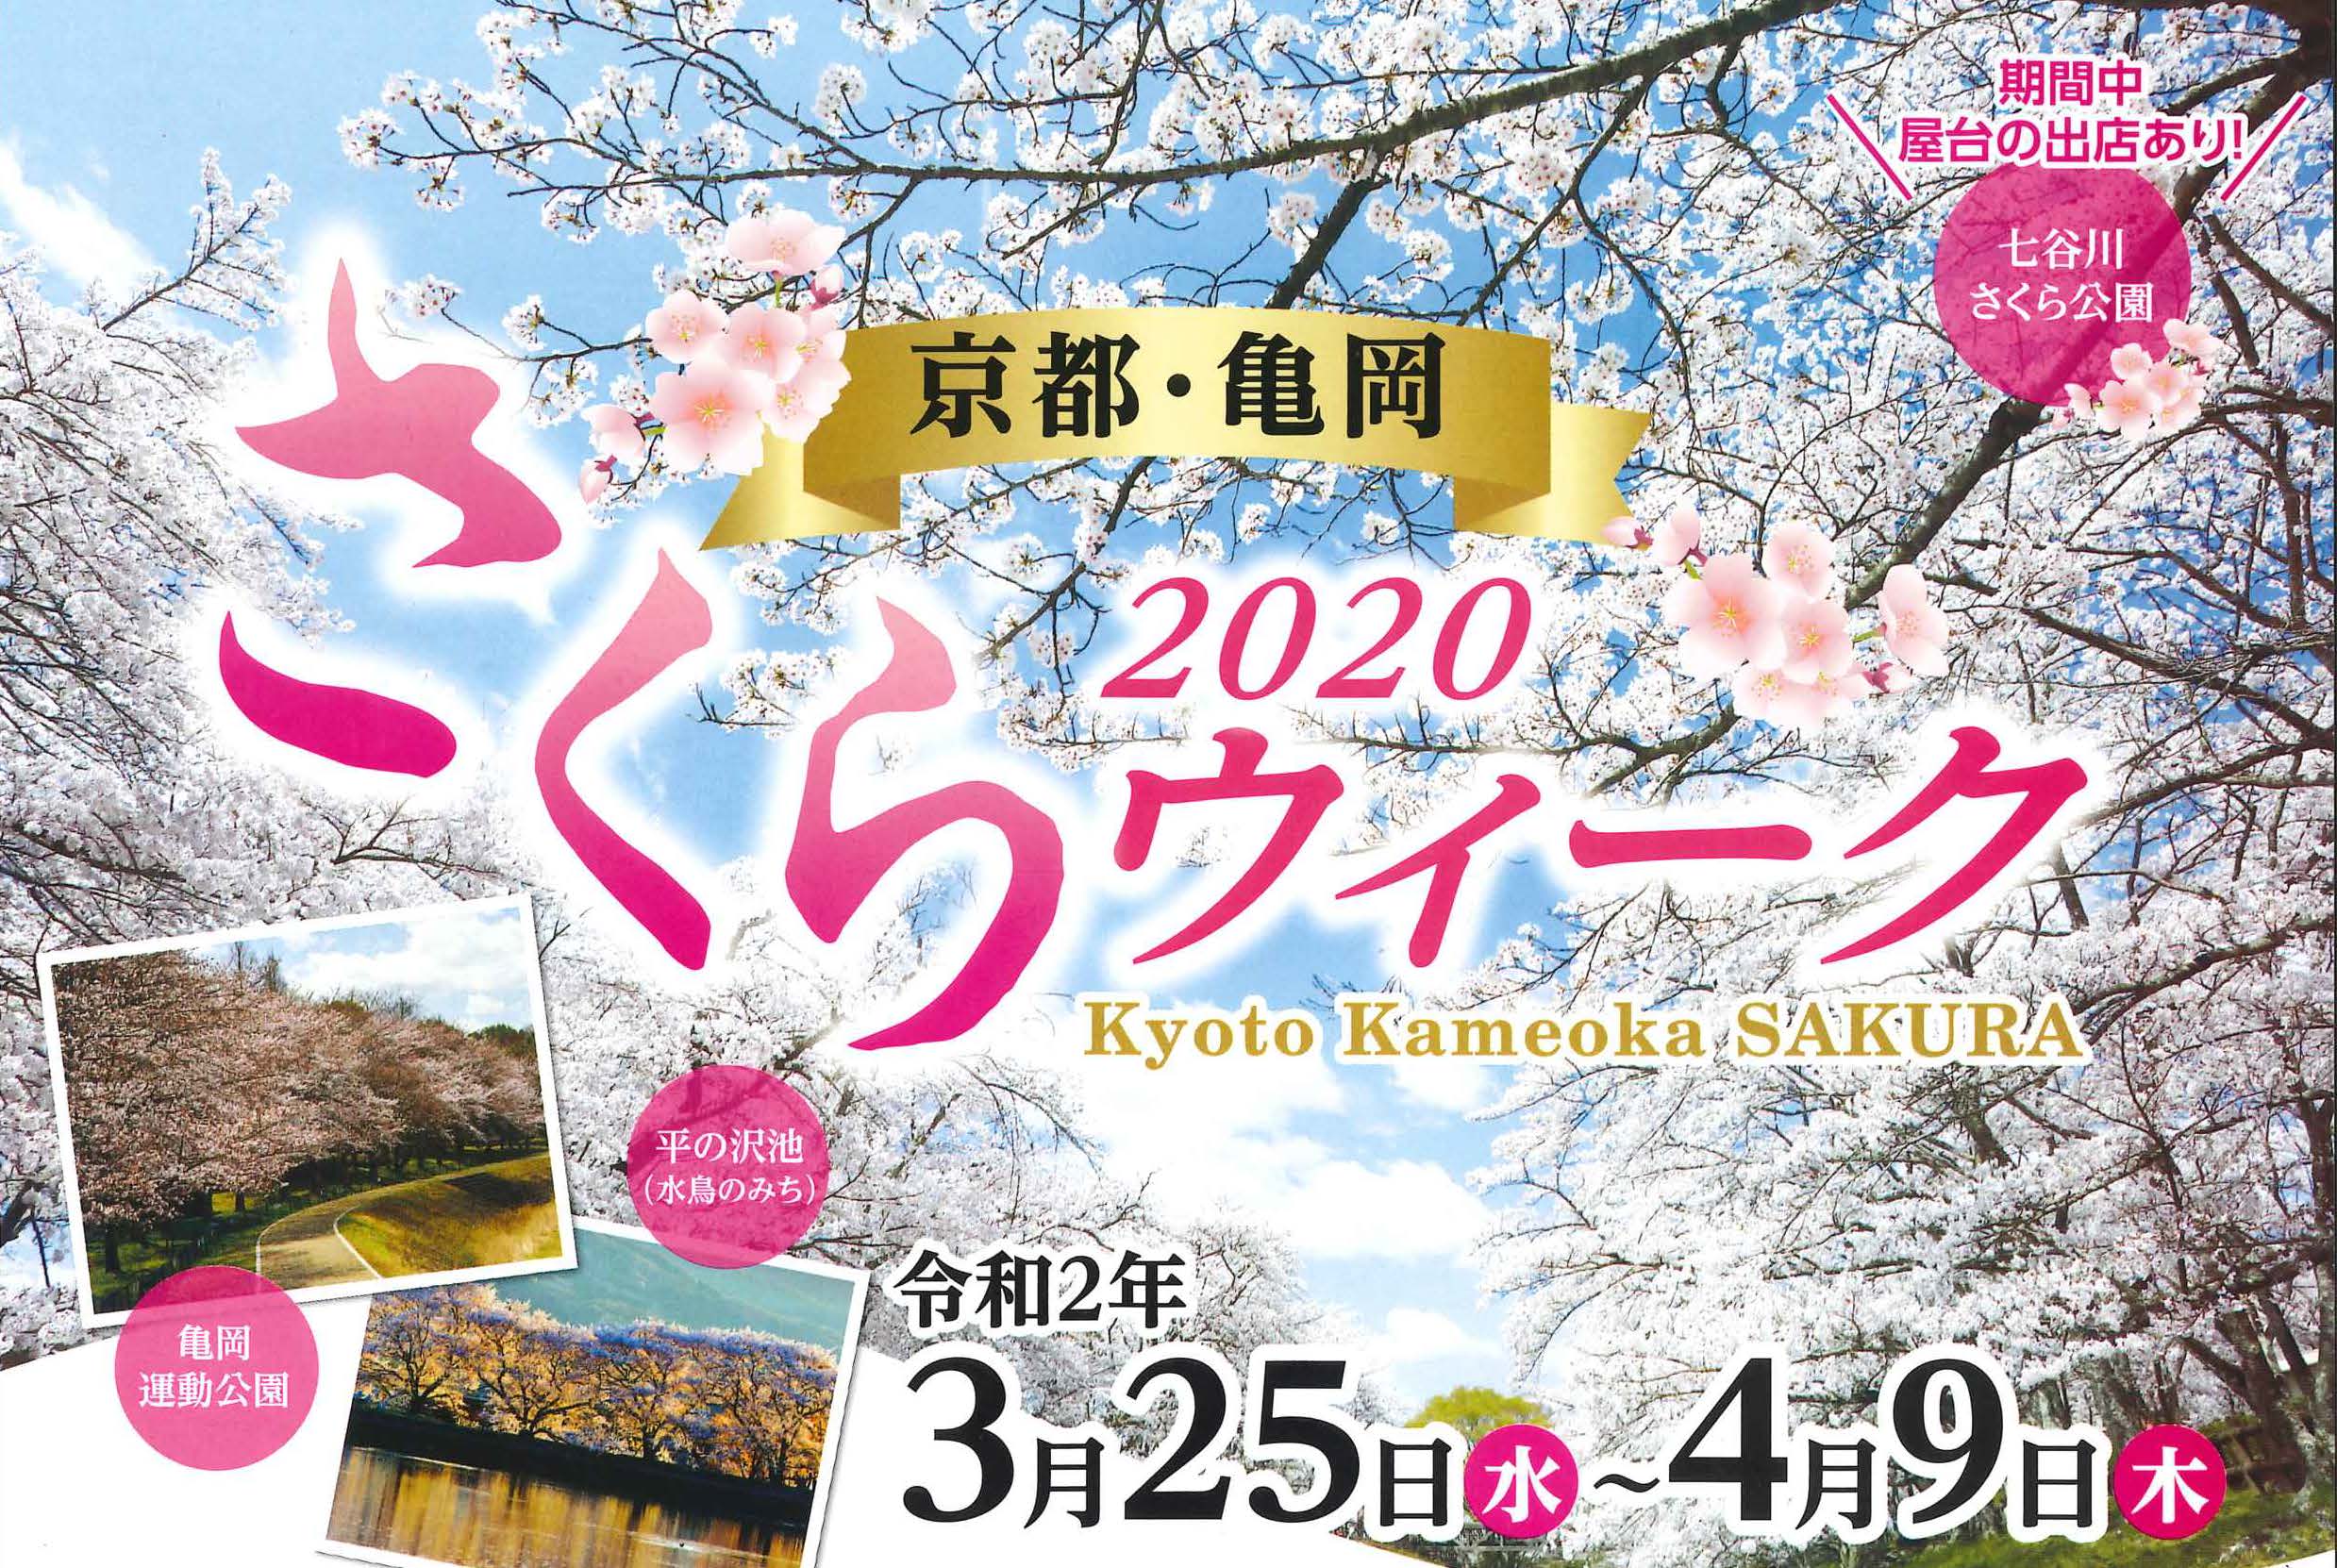 2020 京都・亀岡 さくらウィーク